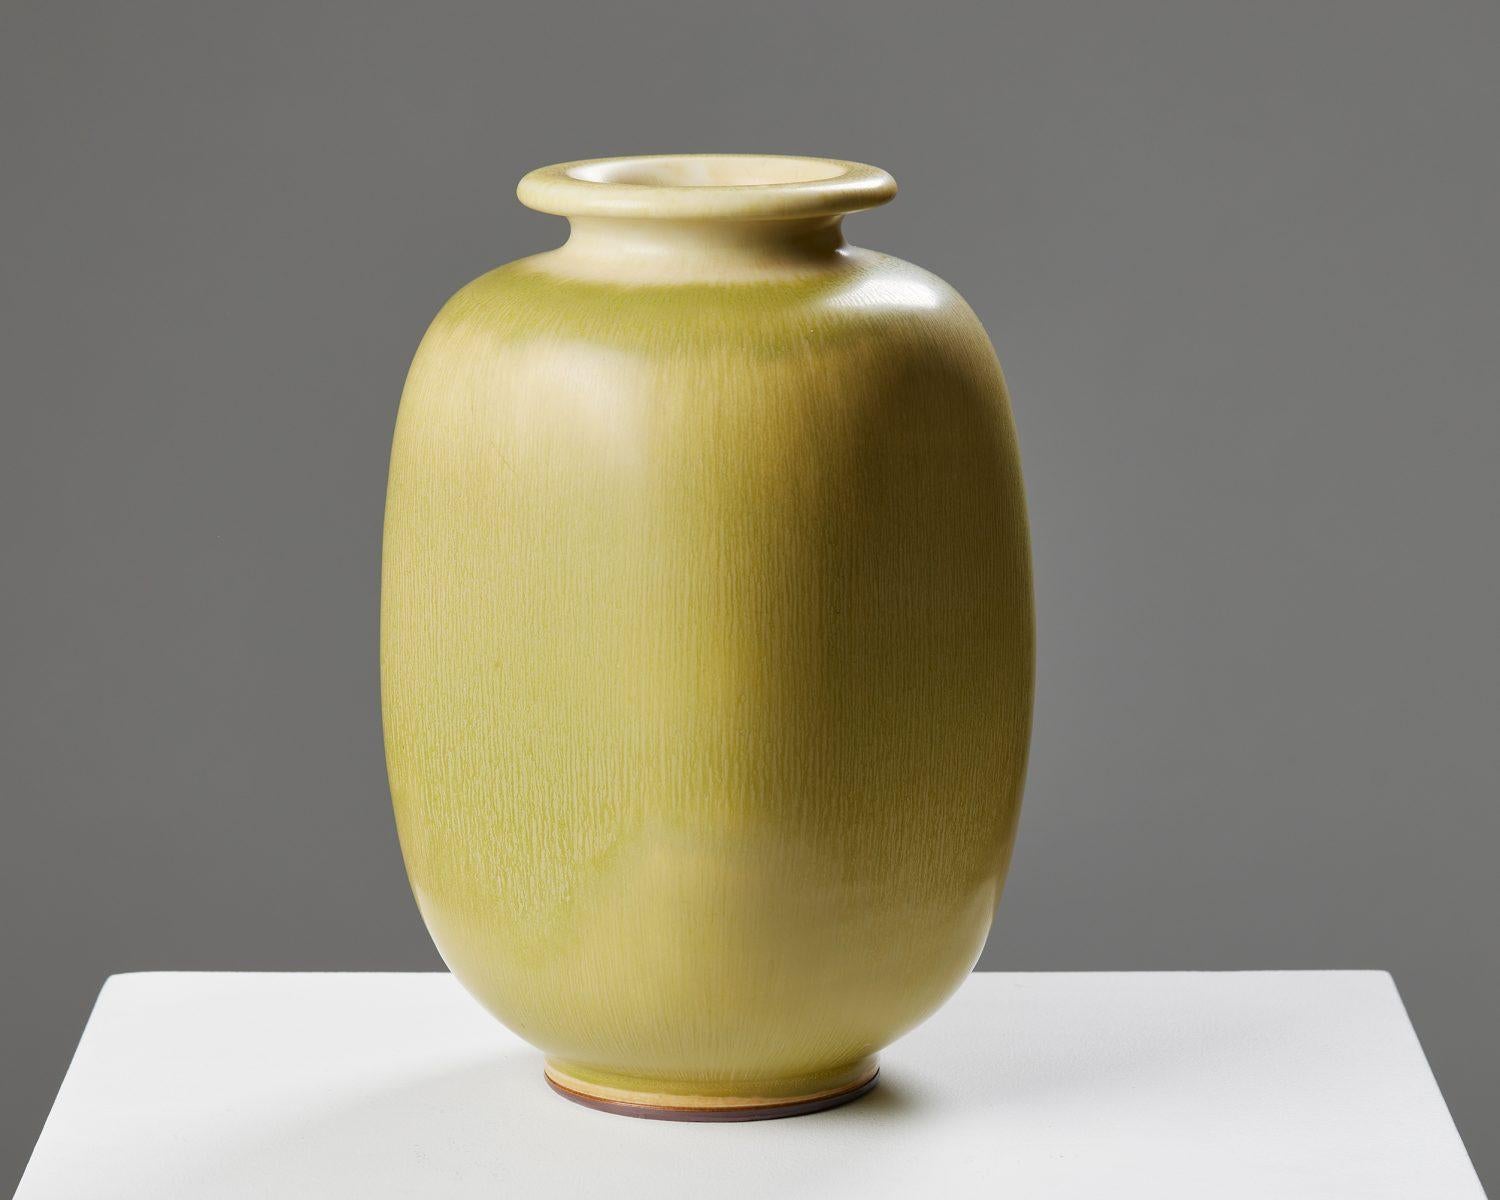 Vase, entworfen von Berndt Friberg für Gustavsberg, 
Schweden. 1950s.

Steingut.

Unterschrieben.

Abmessungen:
H: 25,5 cm /10